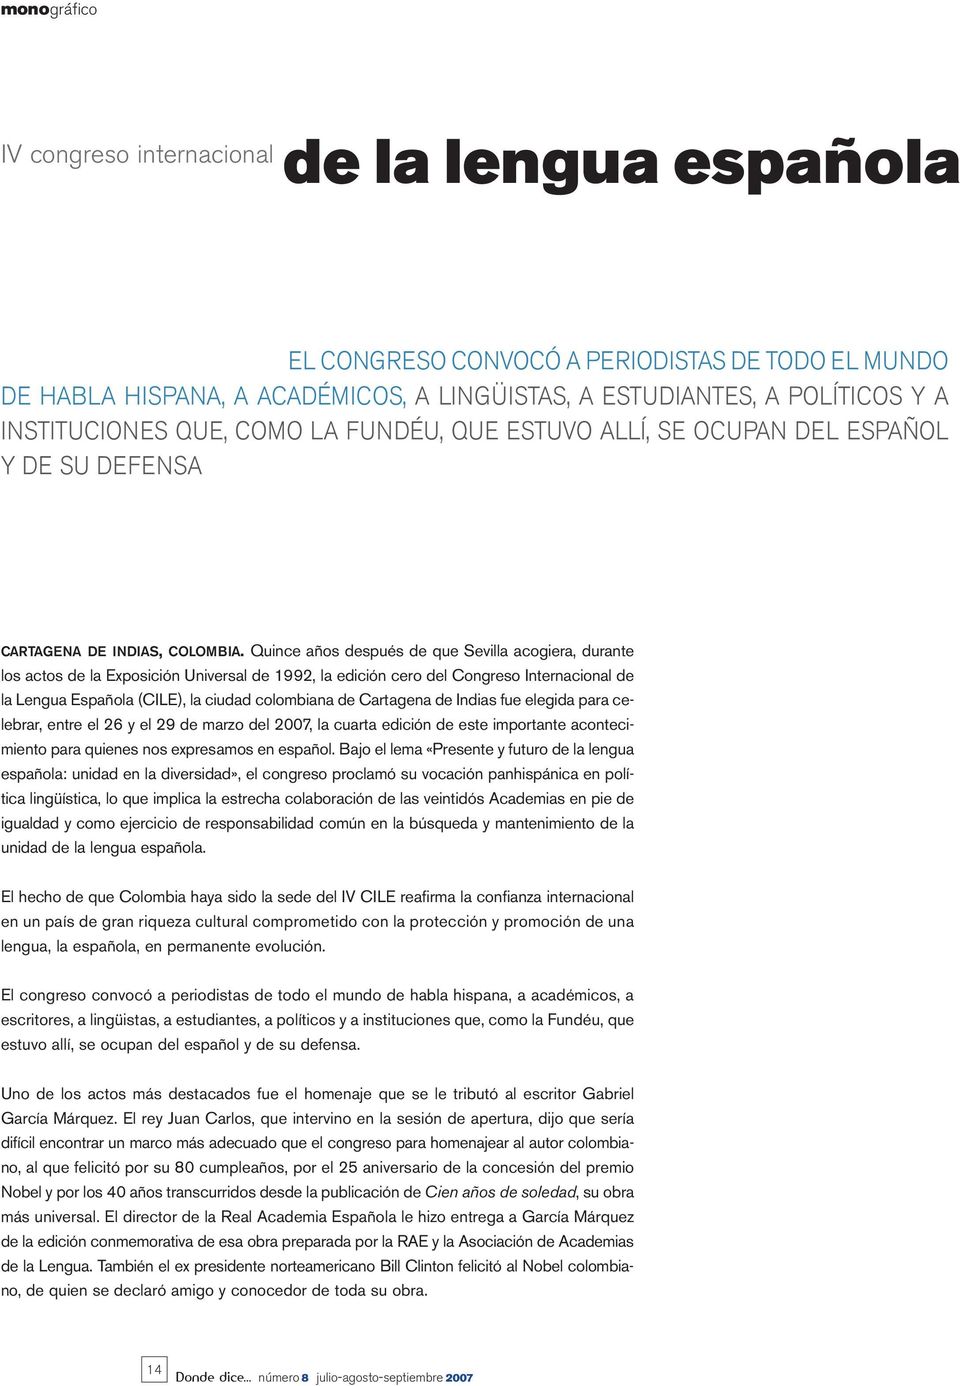 Quince años después de que Sevilla acogiera, durante los actos de la Exposición Universal de 1992, la edición cero del Congreso Internacional de la Lengua Española (CILE), la ciudad colombiana de